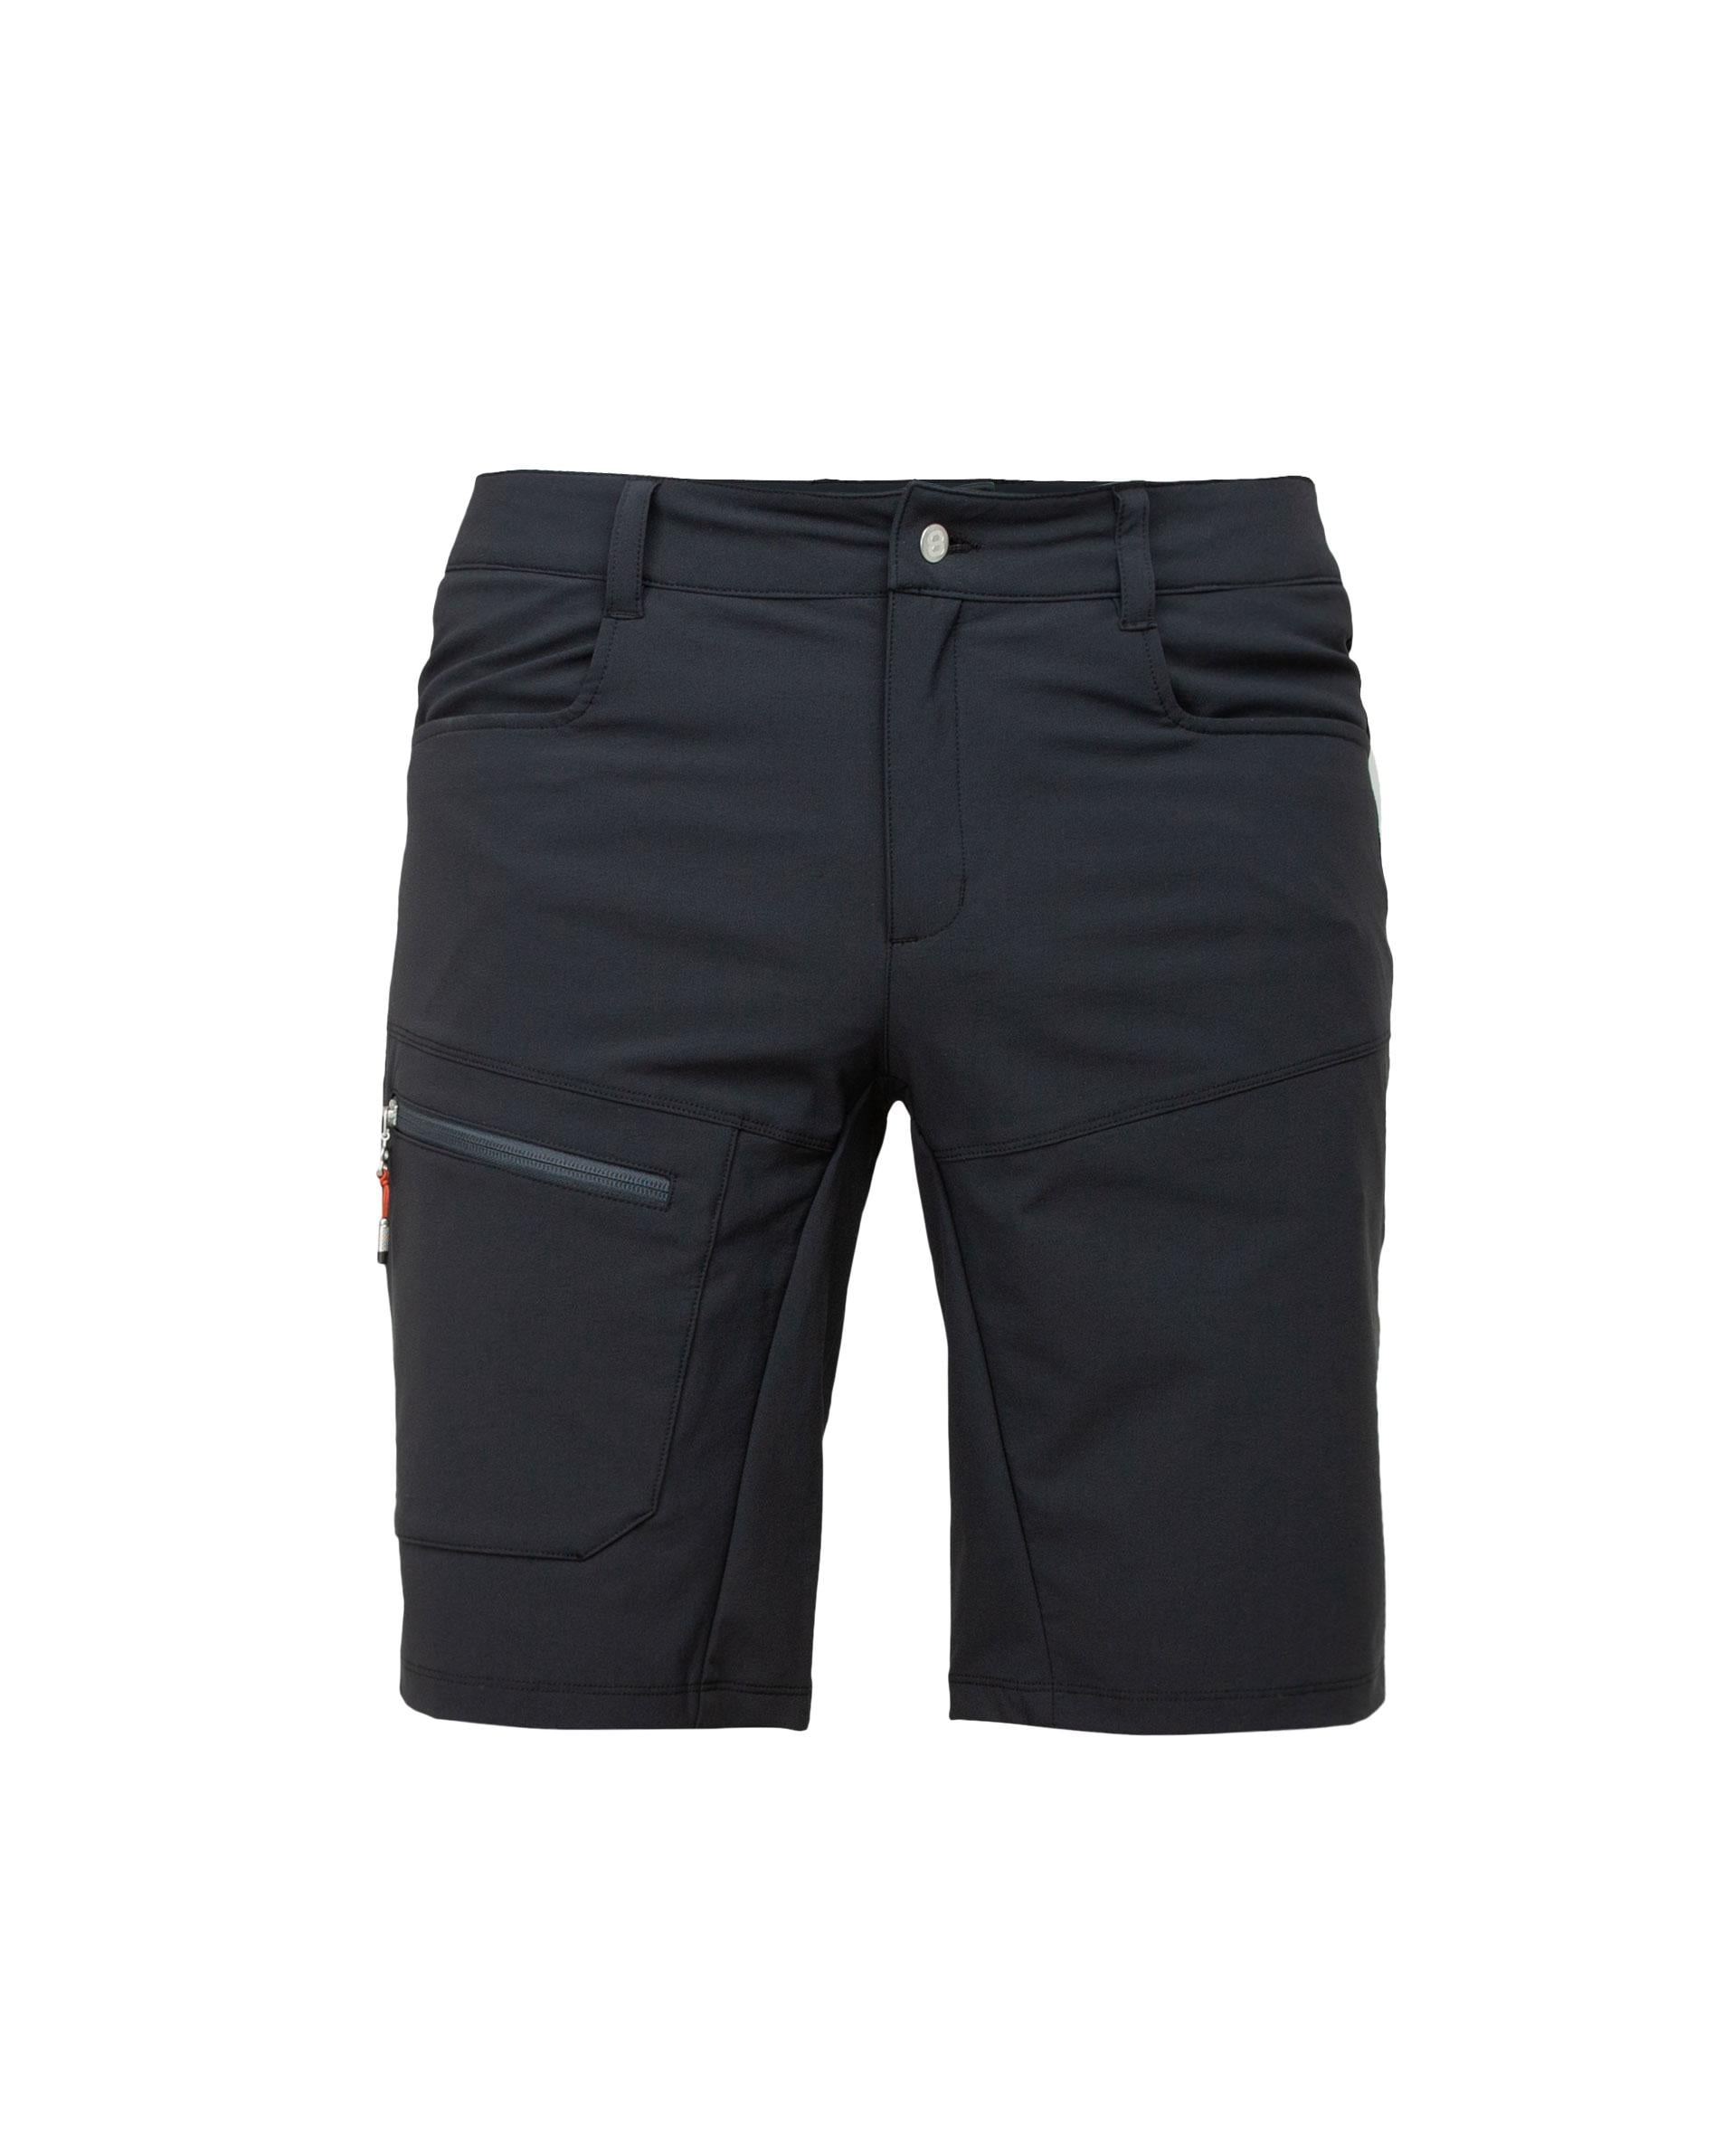 Montafon 2.0 Short Black - Black shorts men